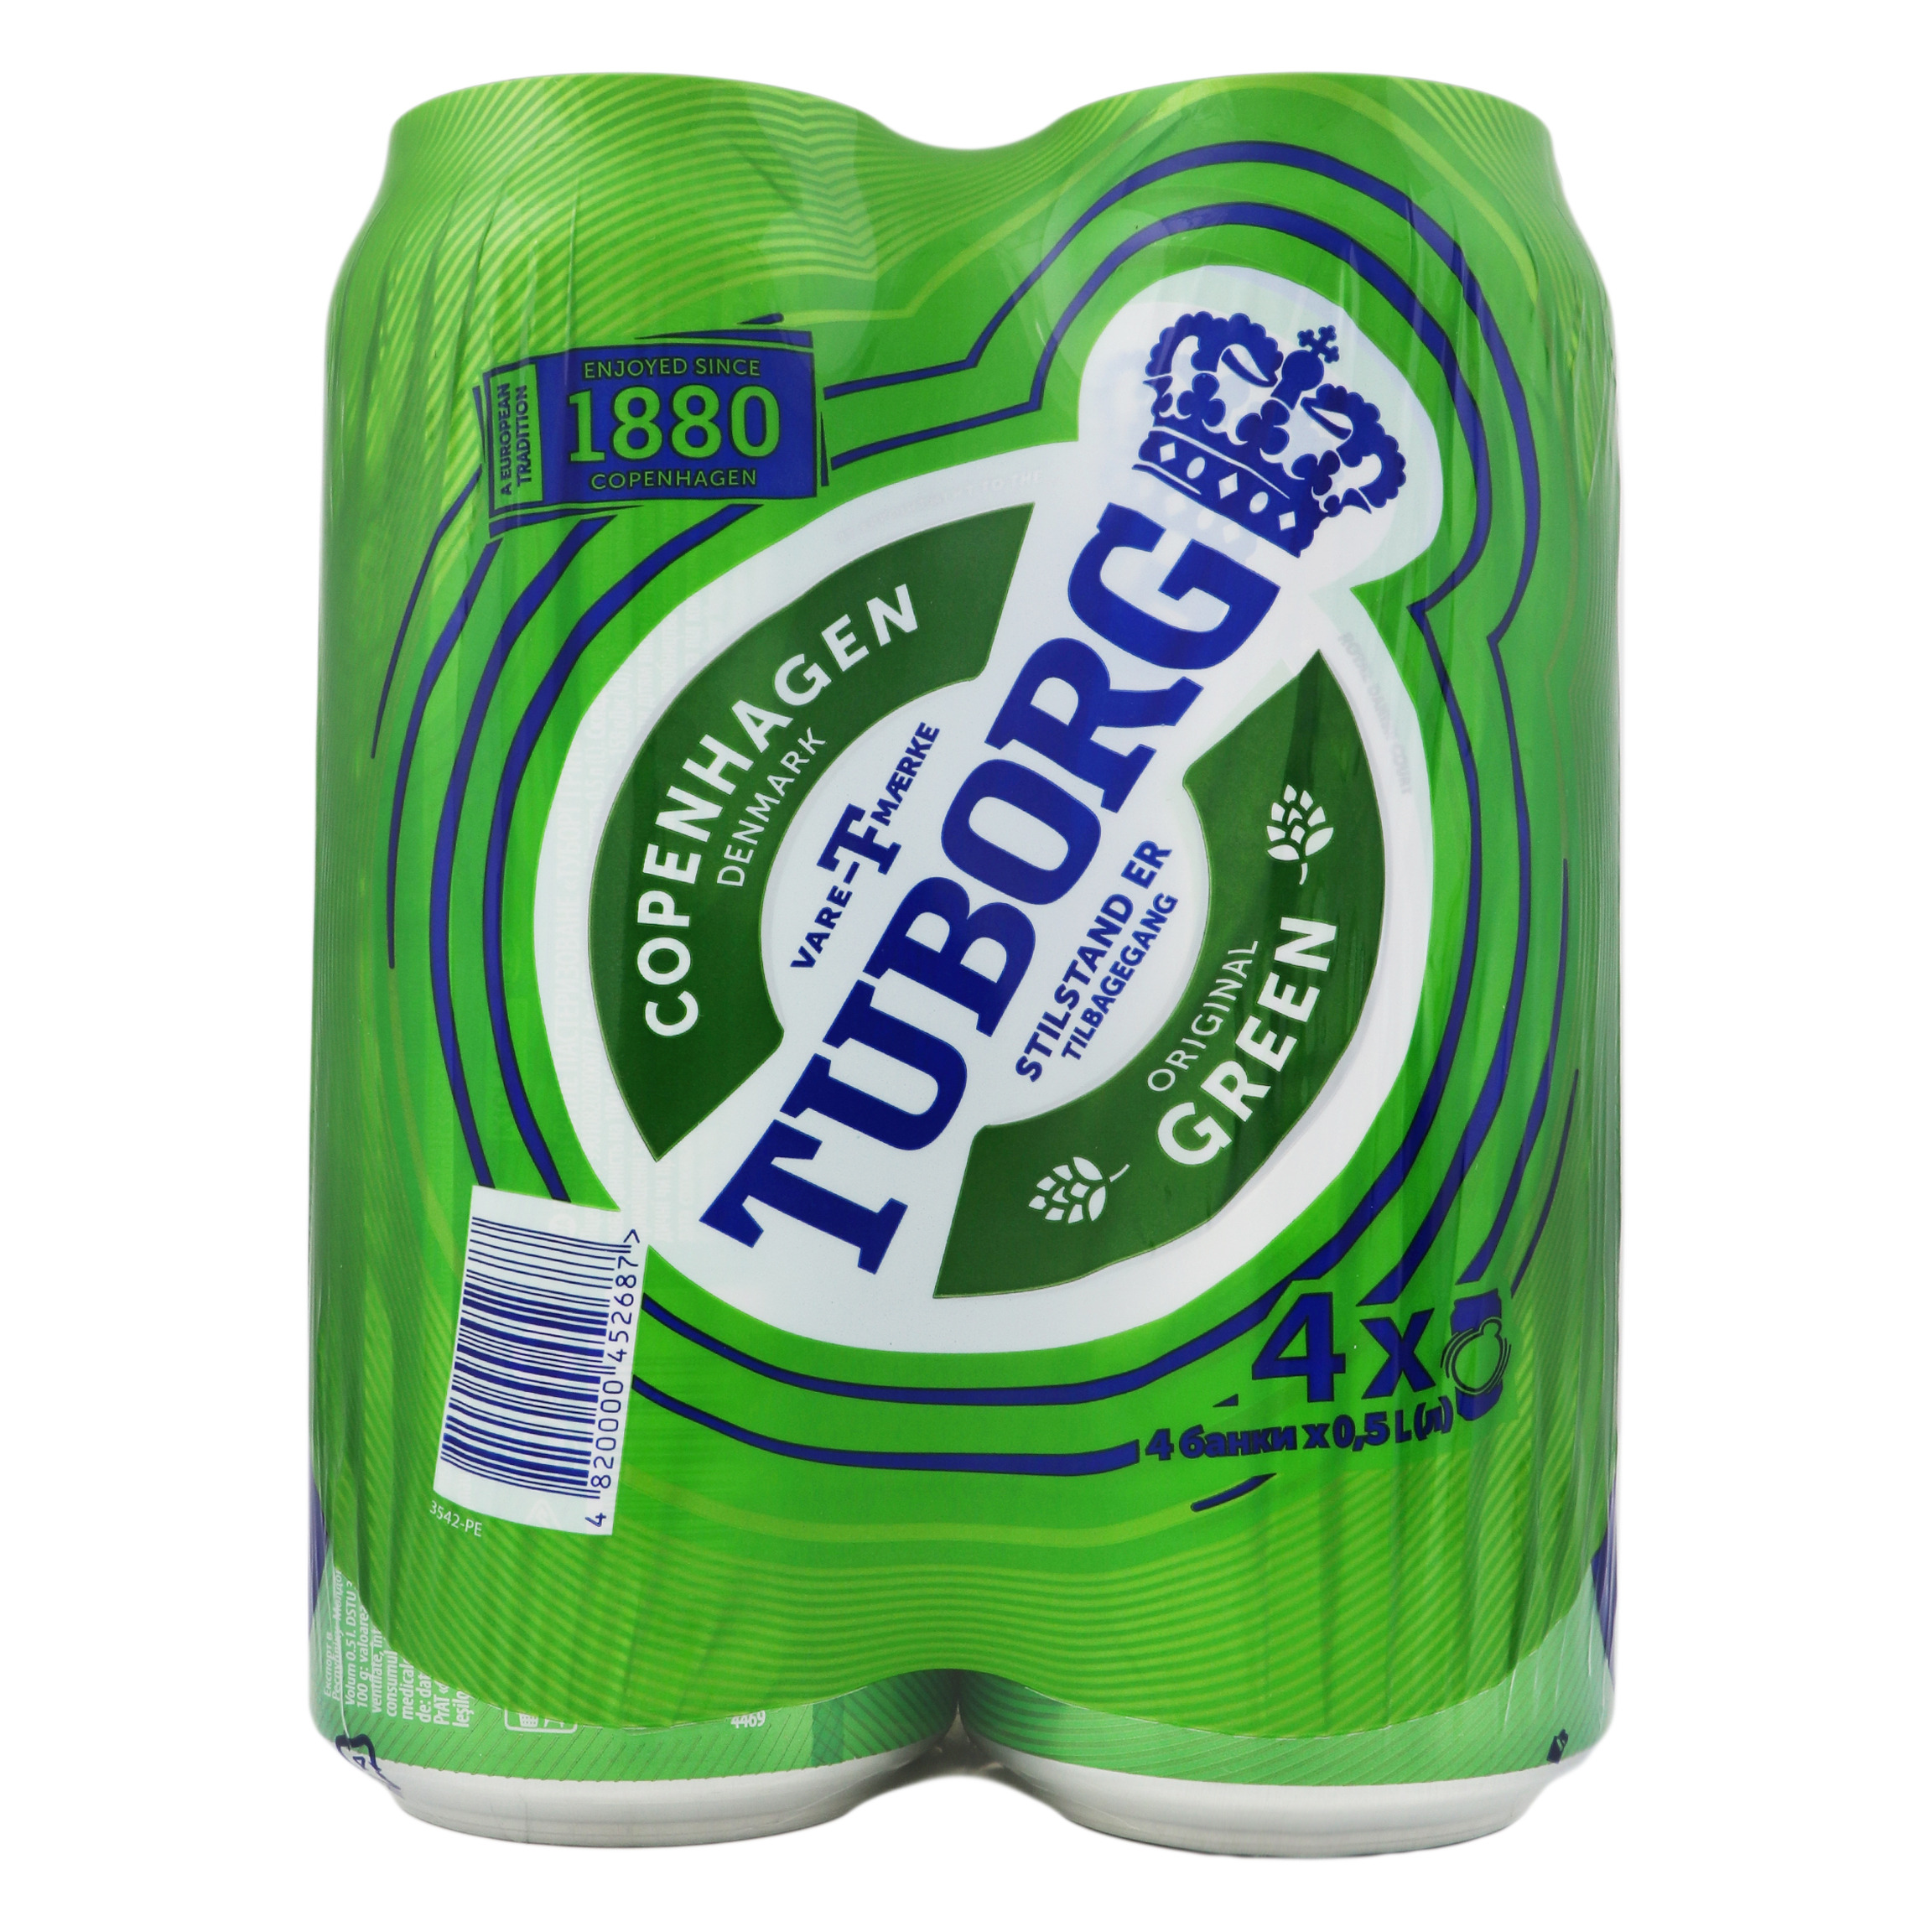 Набор пива Tuborg Green светлое 4,6% 4*0,5л жестяная банка